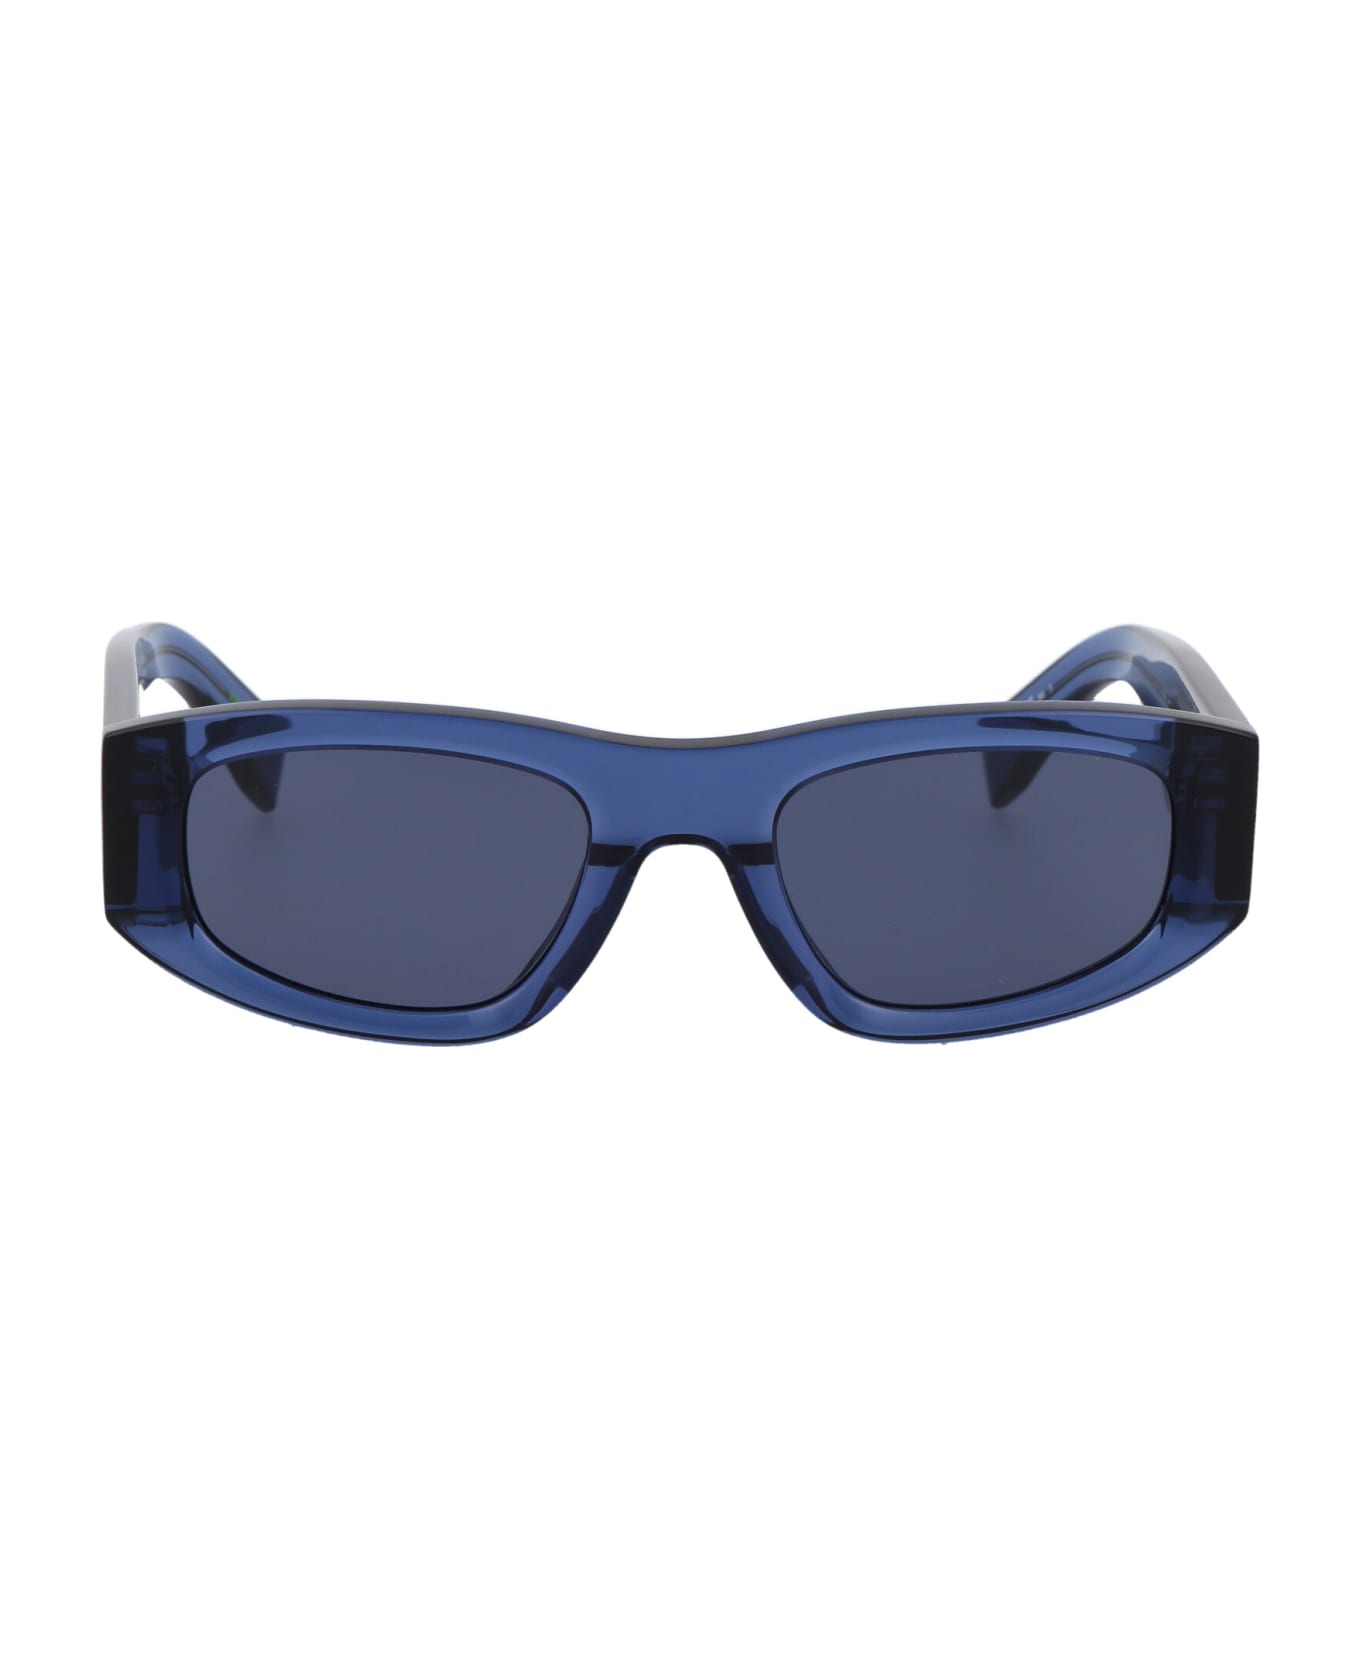 Tommy Hilfiger Tj 0087/s Nero Sunglasses - PJPKU BLUE